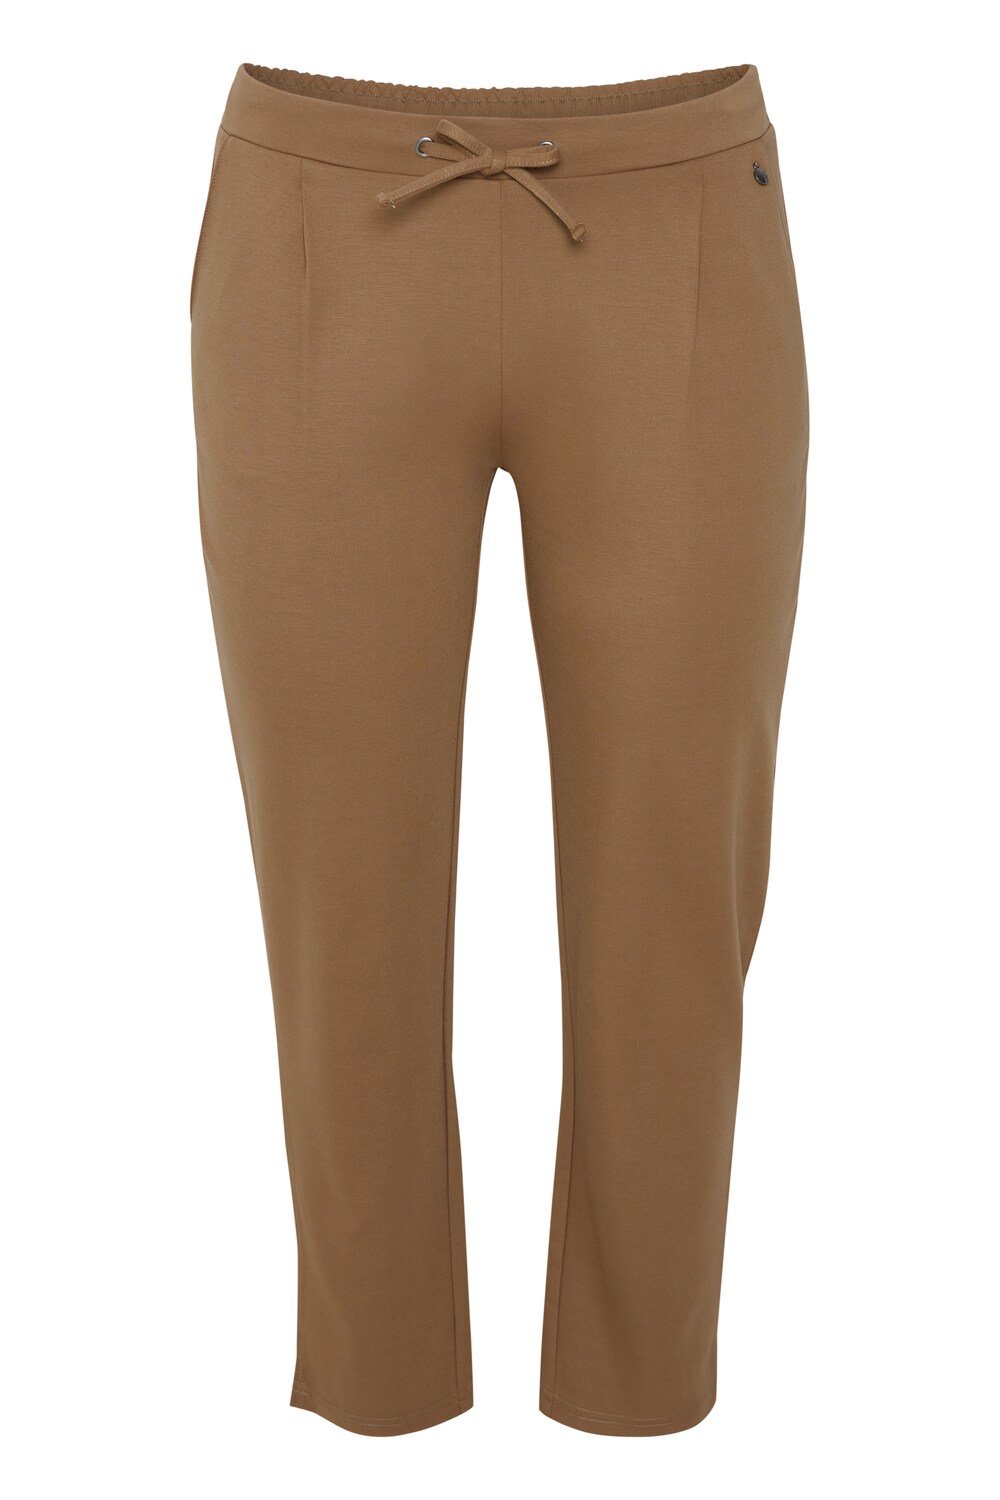 Узкие брюки со складками спереди Fransa Curve STRETCH, коричневый узкие брюки со складками спереди fransa curve stretch коричневый